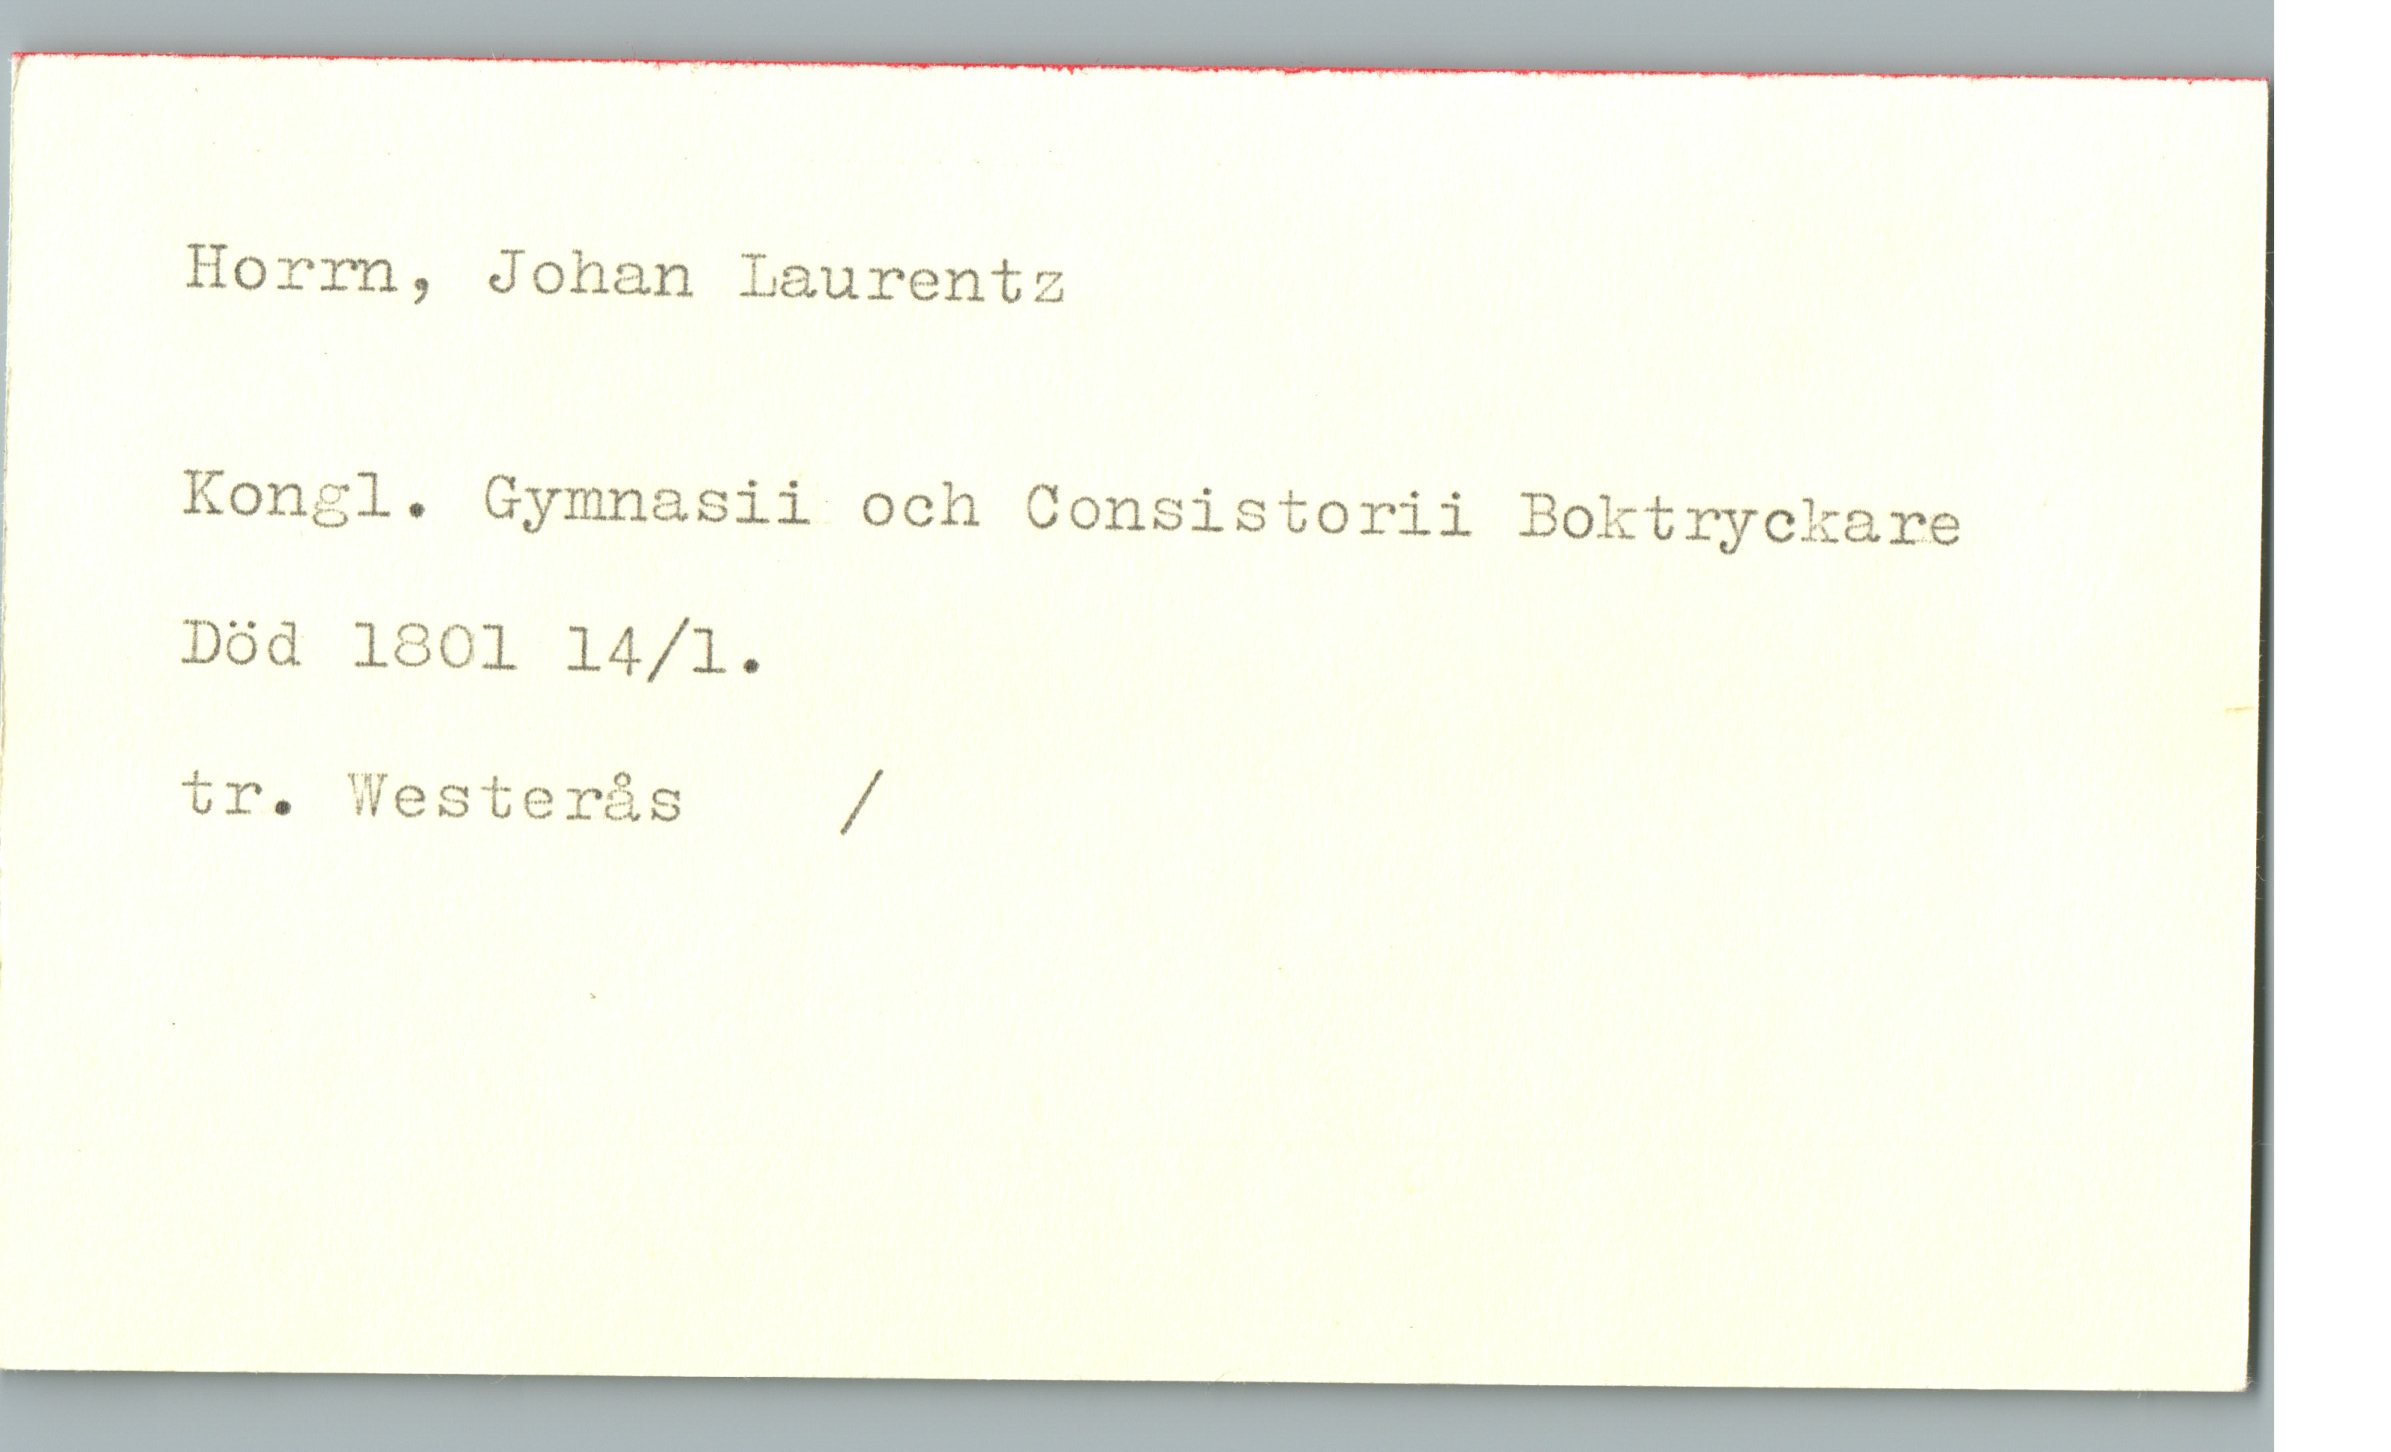 Horrn, Johan Laurentz Horrn, Johan Laurentz
Kongl. Gymnasii och Consistorii Boktryckare
Död 1801 14/1.
tr. Westerås